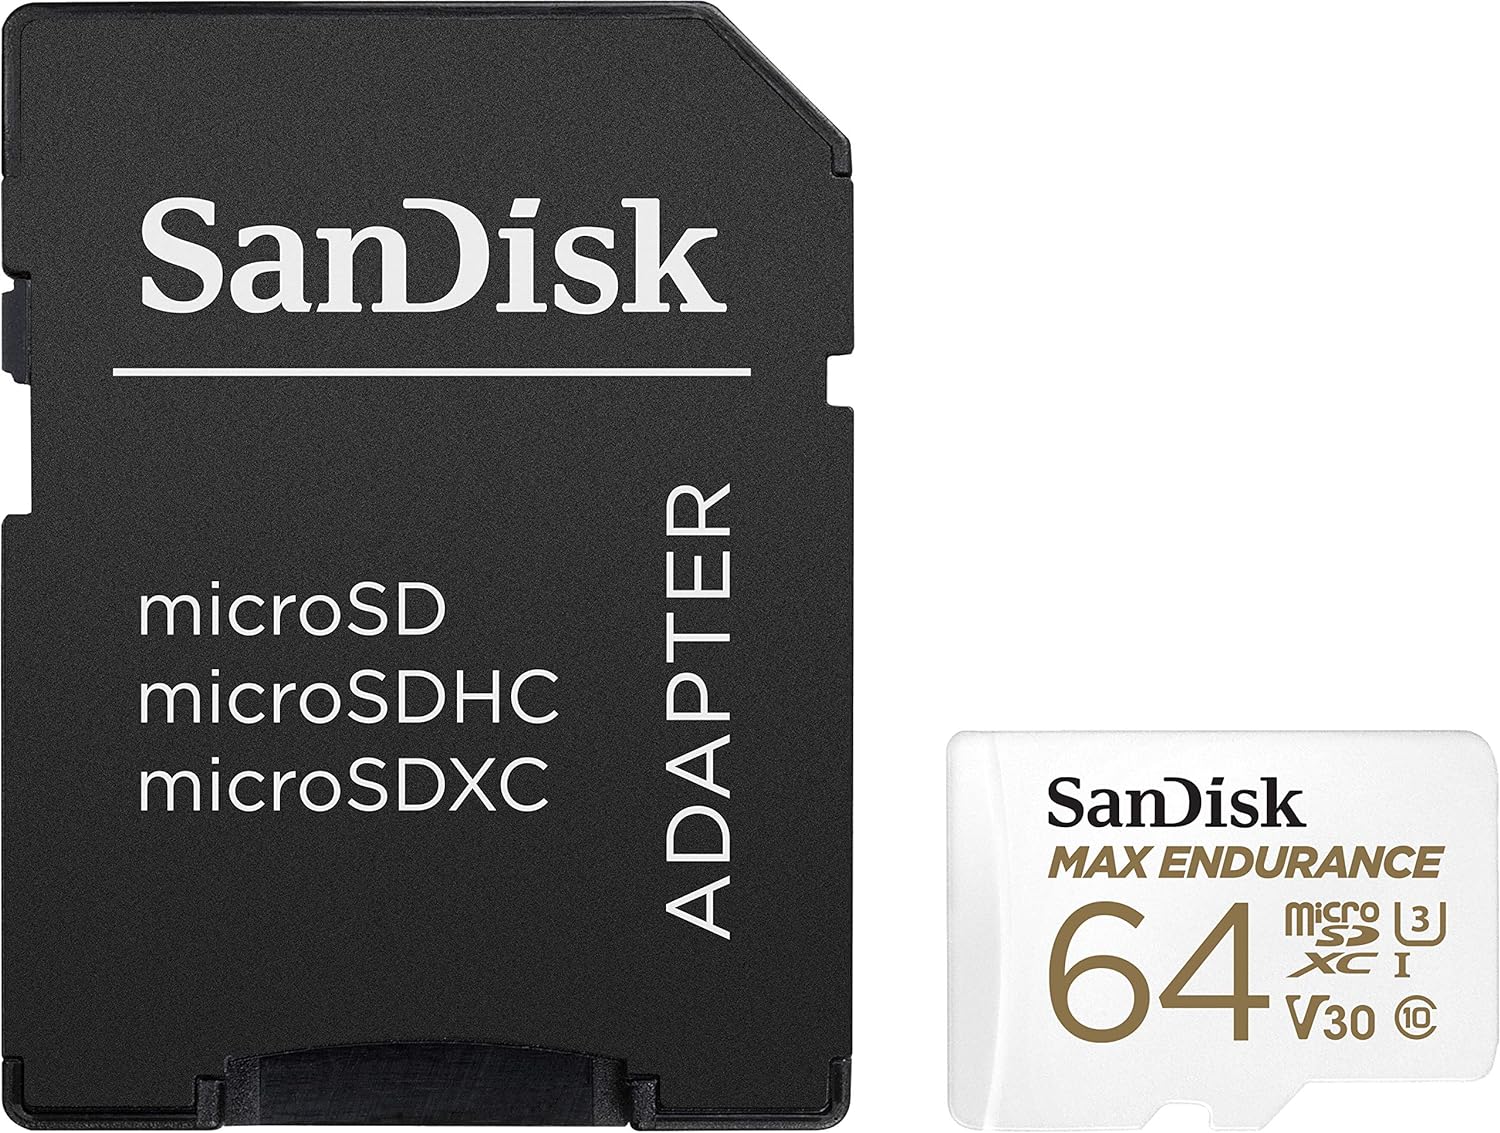 SanDisk Max Endurance microSD Card (Class 10)